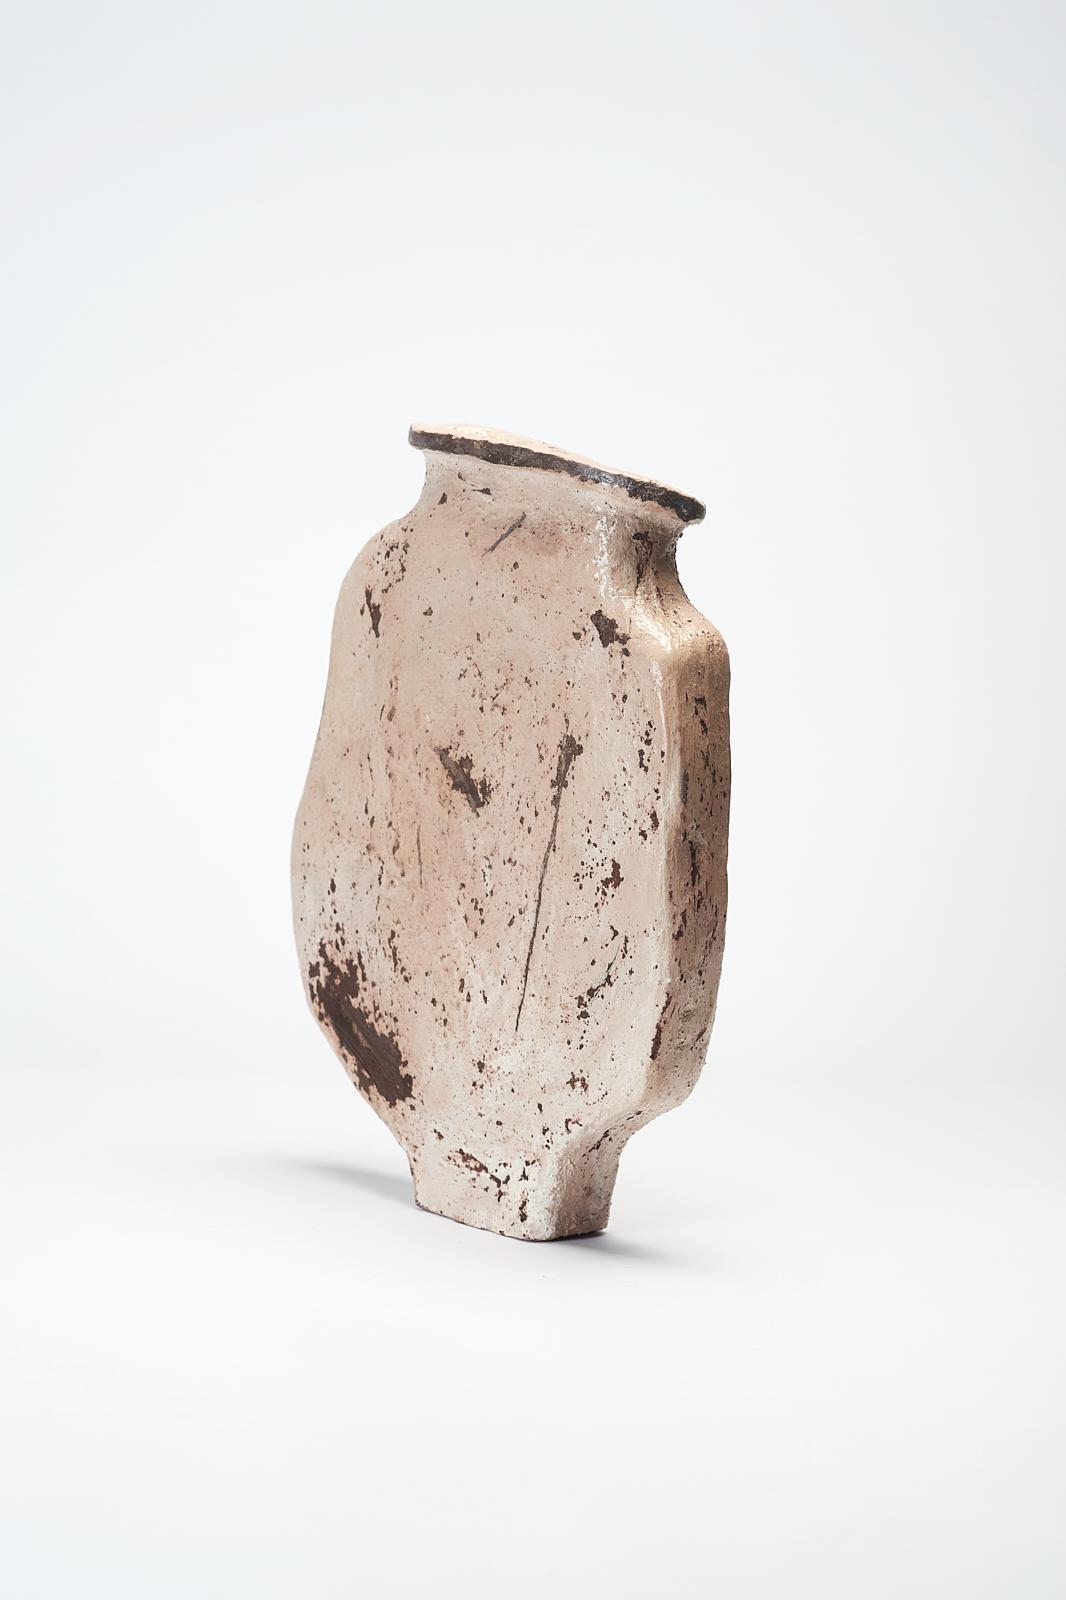 Vase Veda de Willem Van Hooff
Série Core Vessel
Dimensions : L 29 x P 10 x H 37 cm (Les dimensions peuvent varier car les pièces sont fabriquées à la main et peuvent présenter de légères variations de taille).
Matériaux : Faïence, céramique,